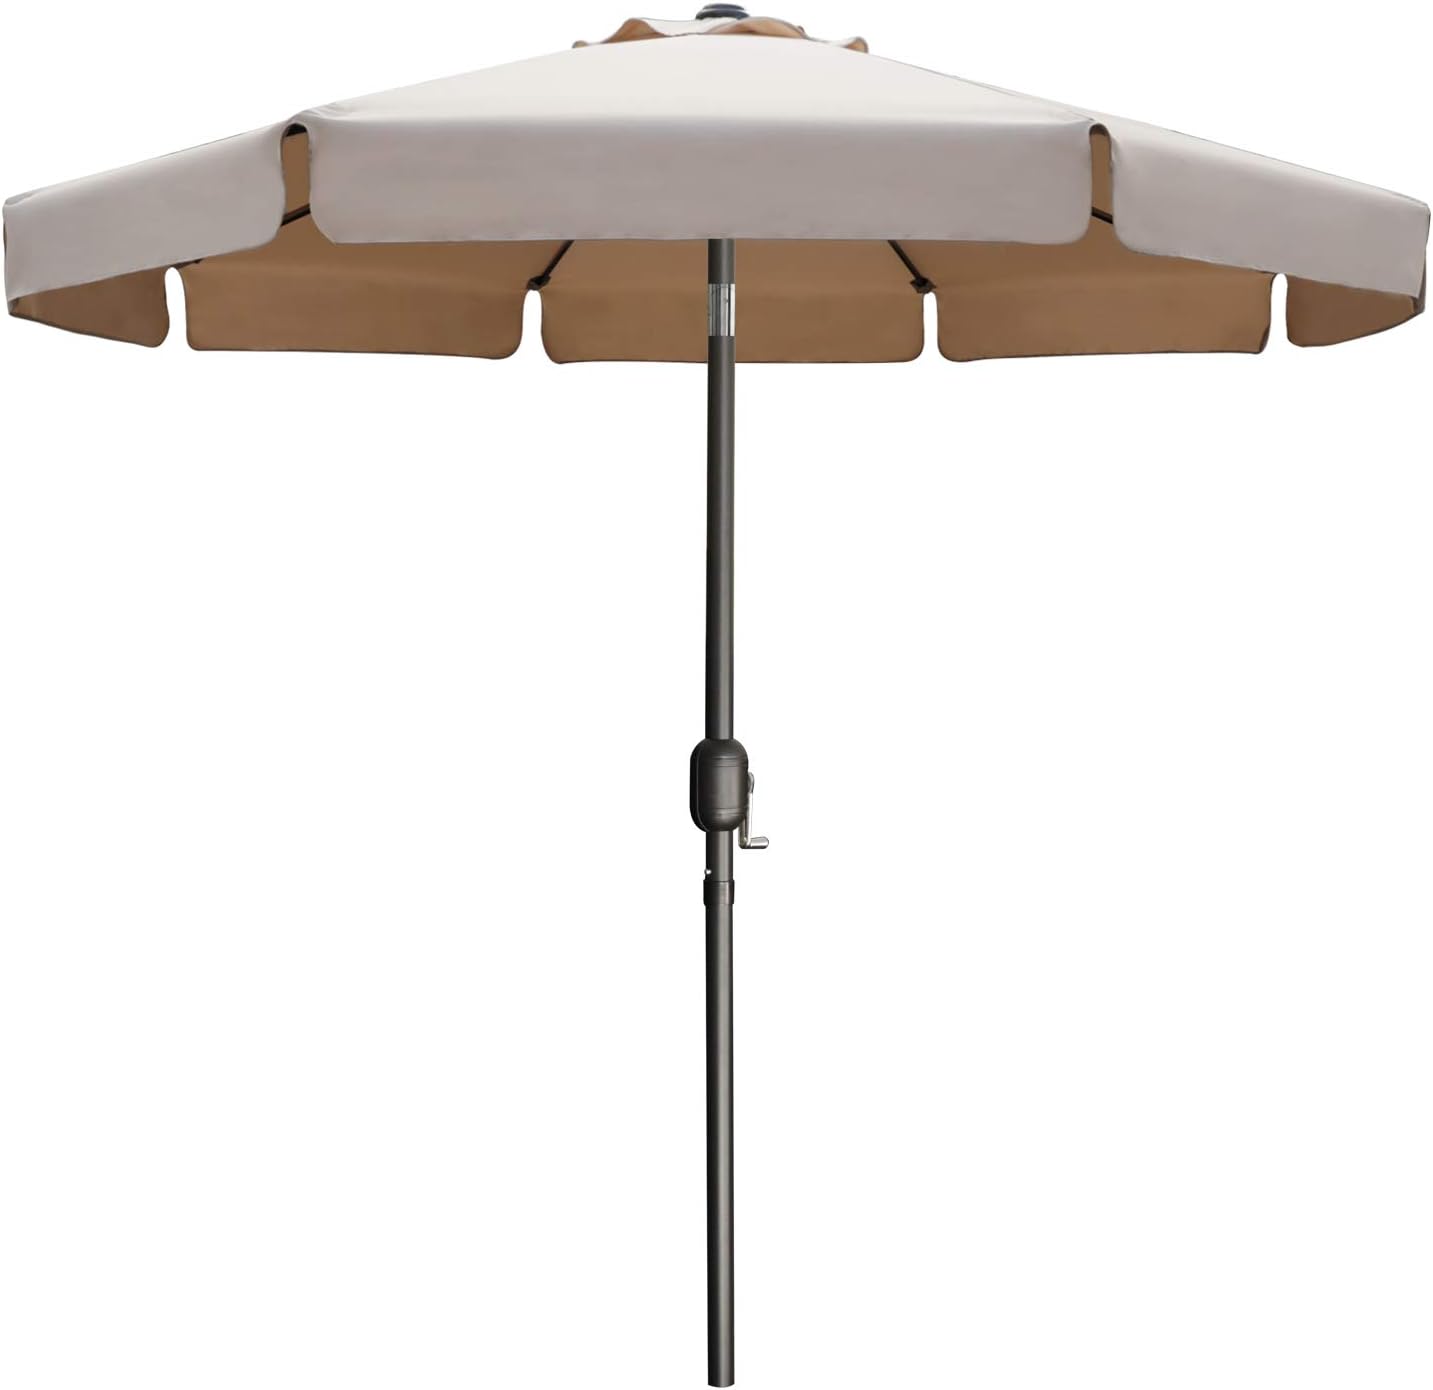 ABCCANOPY Patio Umbrella 7.5ft - Outdoor Table Umbrella with Push Button Tilt and Crank, 8 Ribs Umbrella for Patio Pool Garden Deck (Khaki)